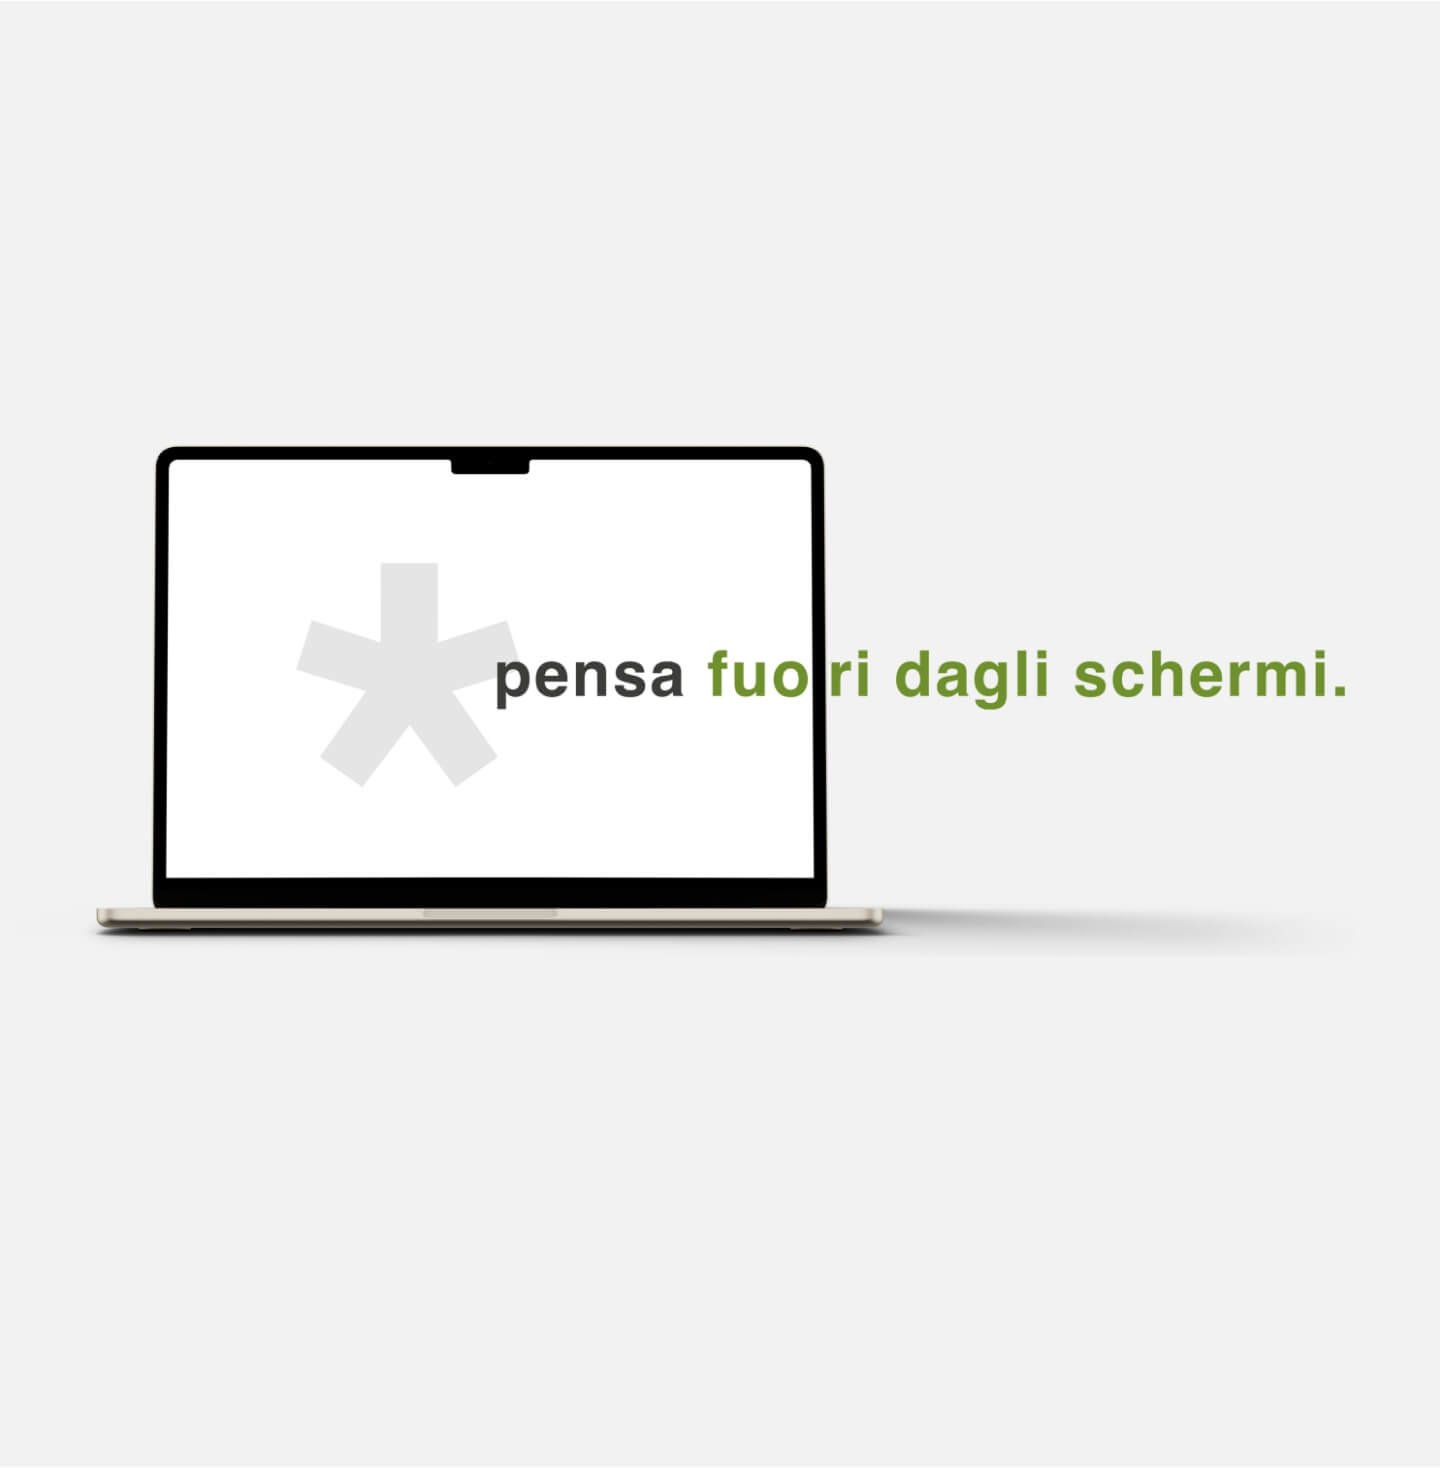 Foto di un laptop su sfondo grigio con un asterisco e il payoff di Ferrari Computer, pensa fuori dagli schermi, che esce dallo schermo.